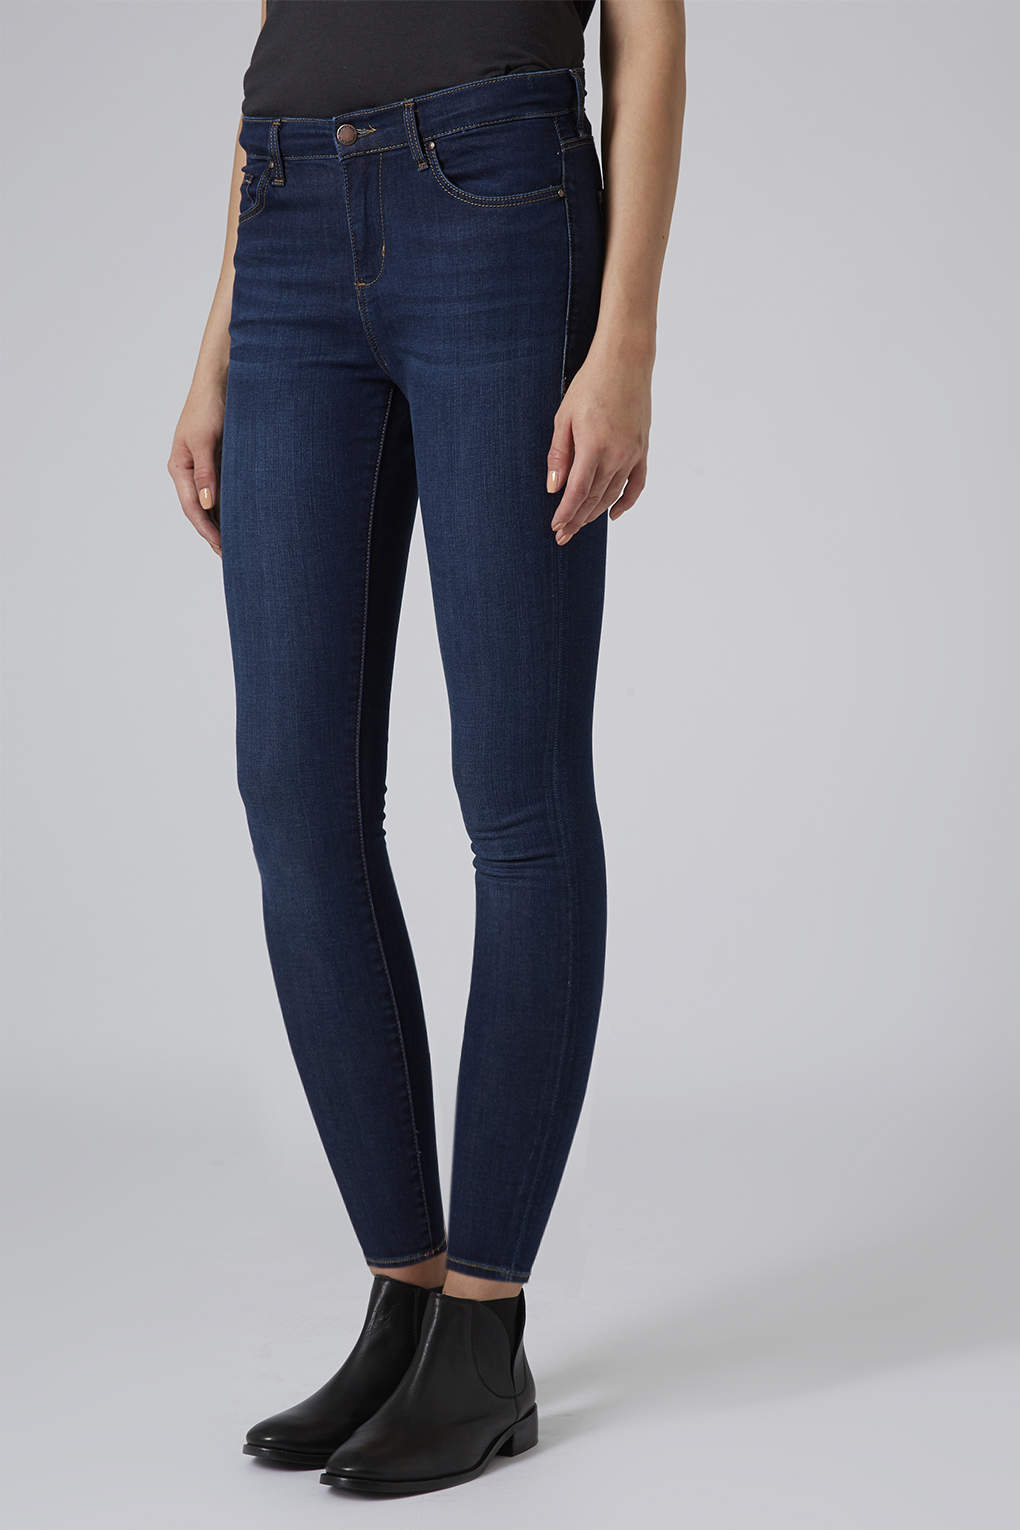 خوذة مؤقت نوم خشن topshop blue black leigh jeans - virelaine.org